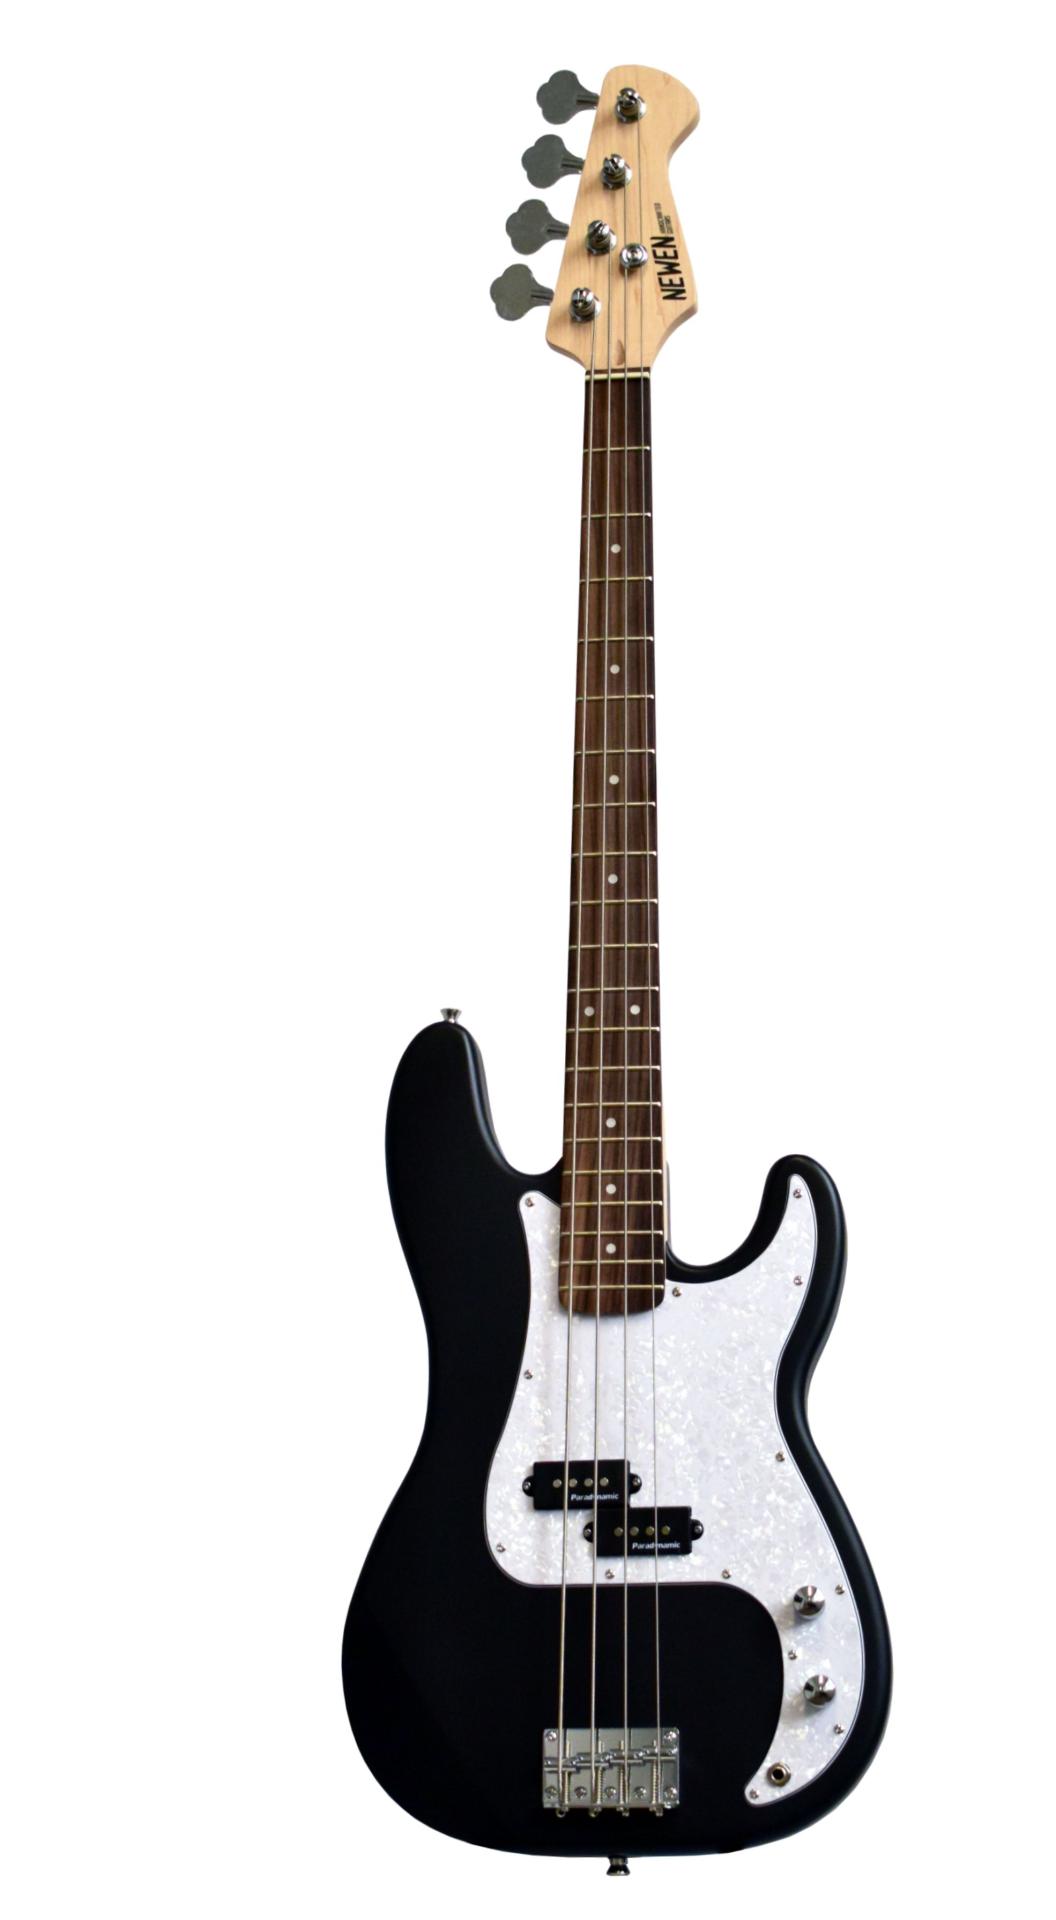 NEWEN PB-BK Black - Gitara basowa model Precision Bass w kolorze czarnym